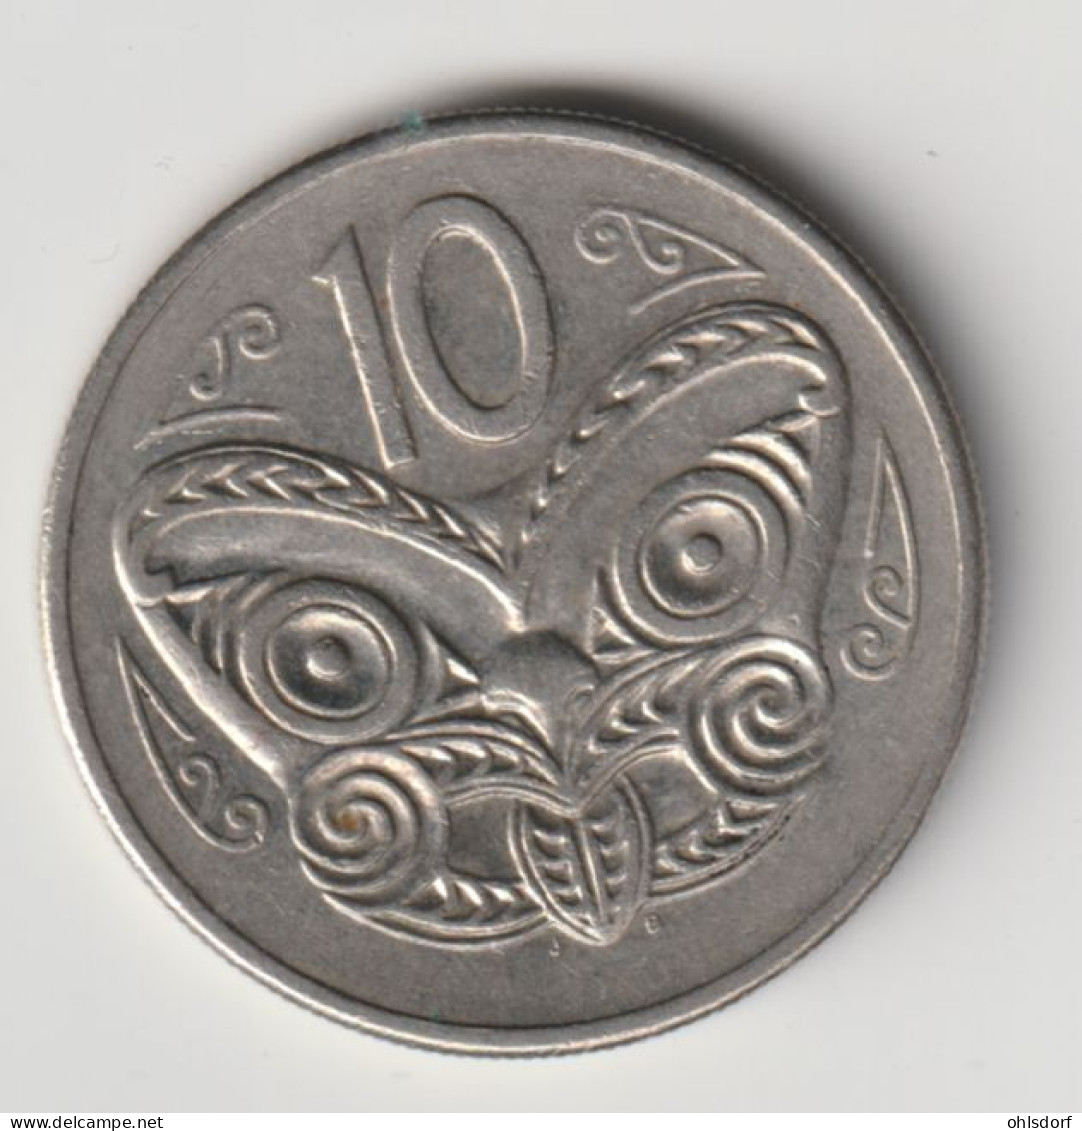 NEW ZEALAND 1980: 10 Cents, KM 41 - Nouvelle-Zélande